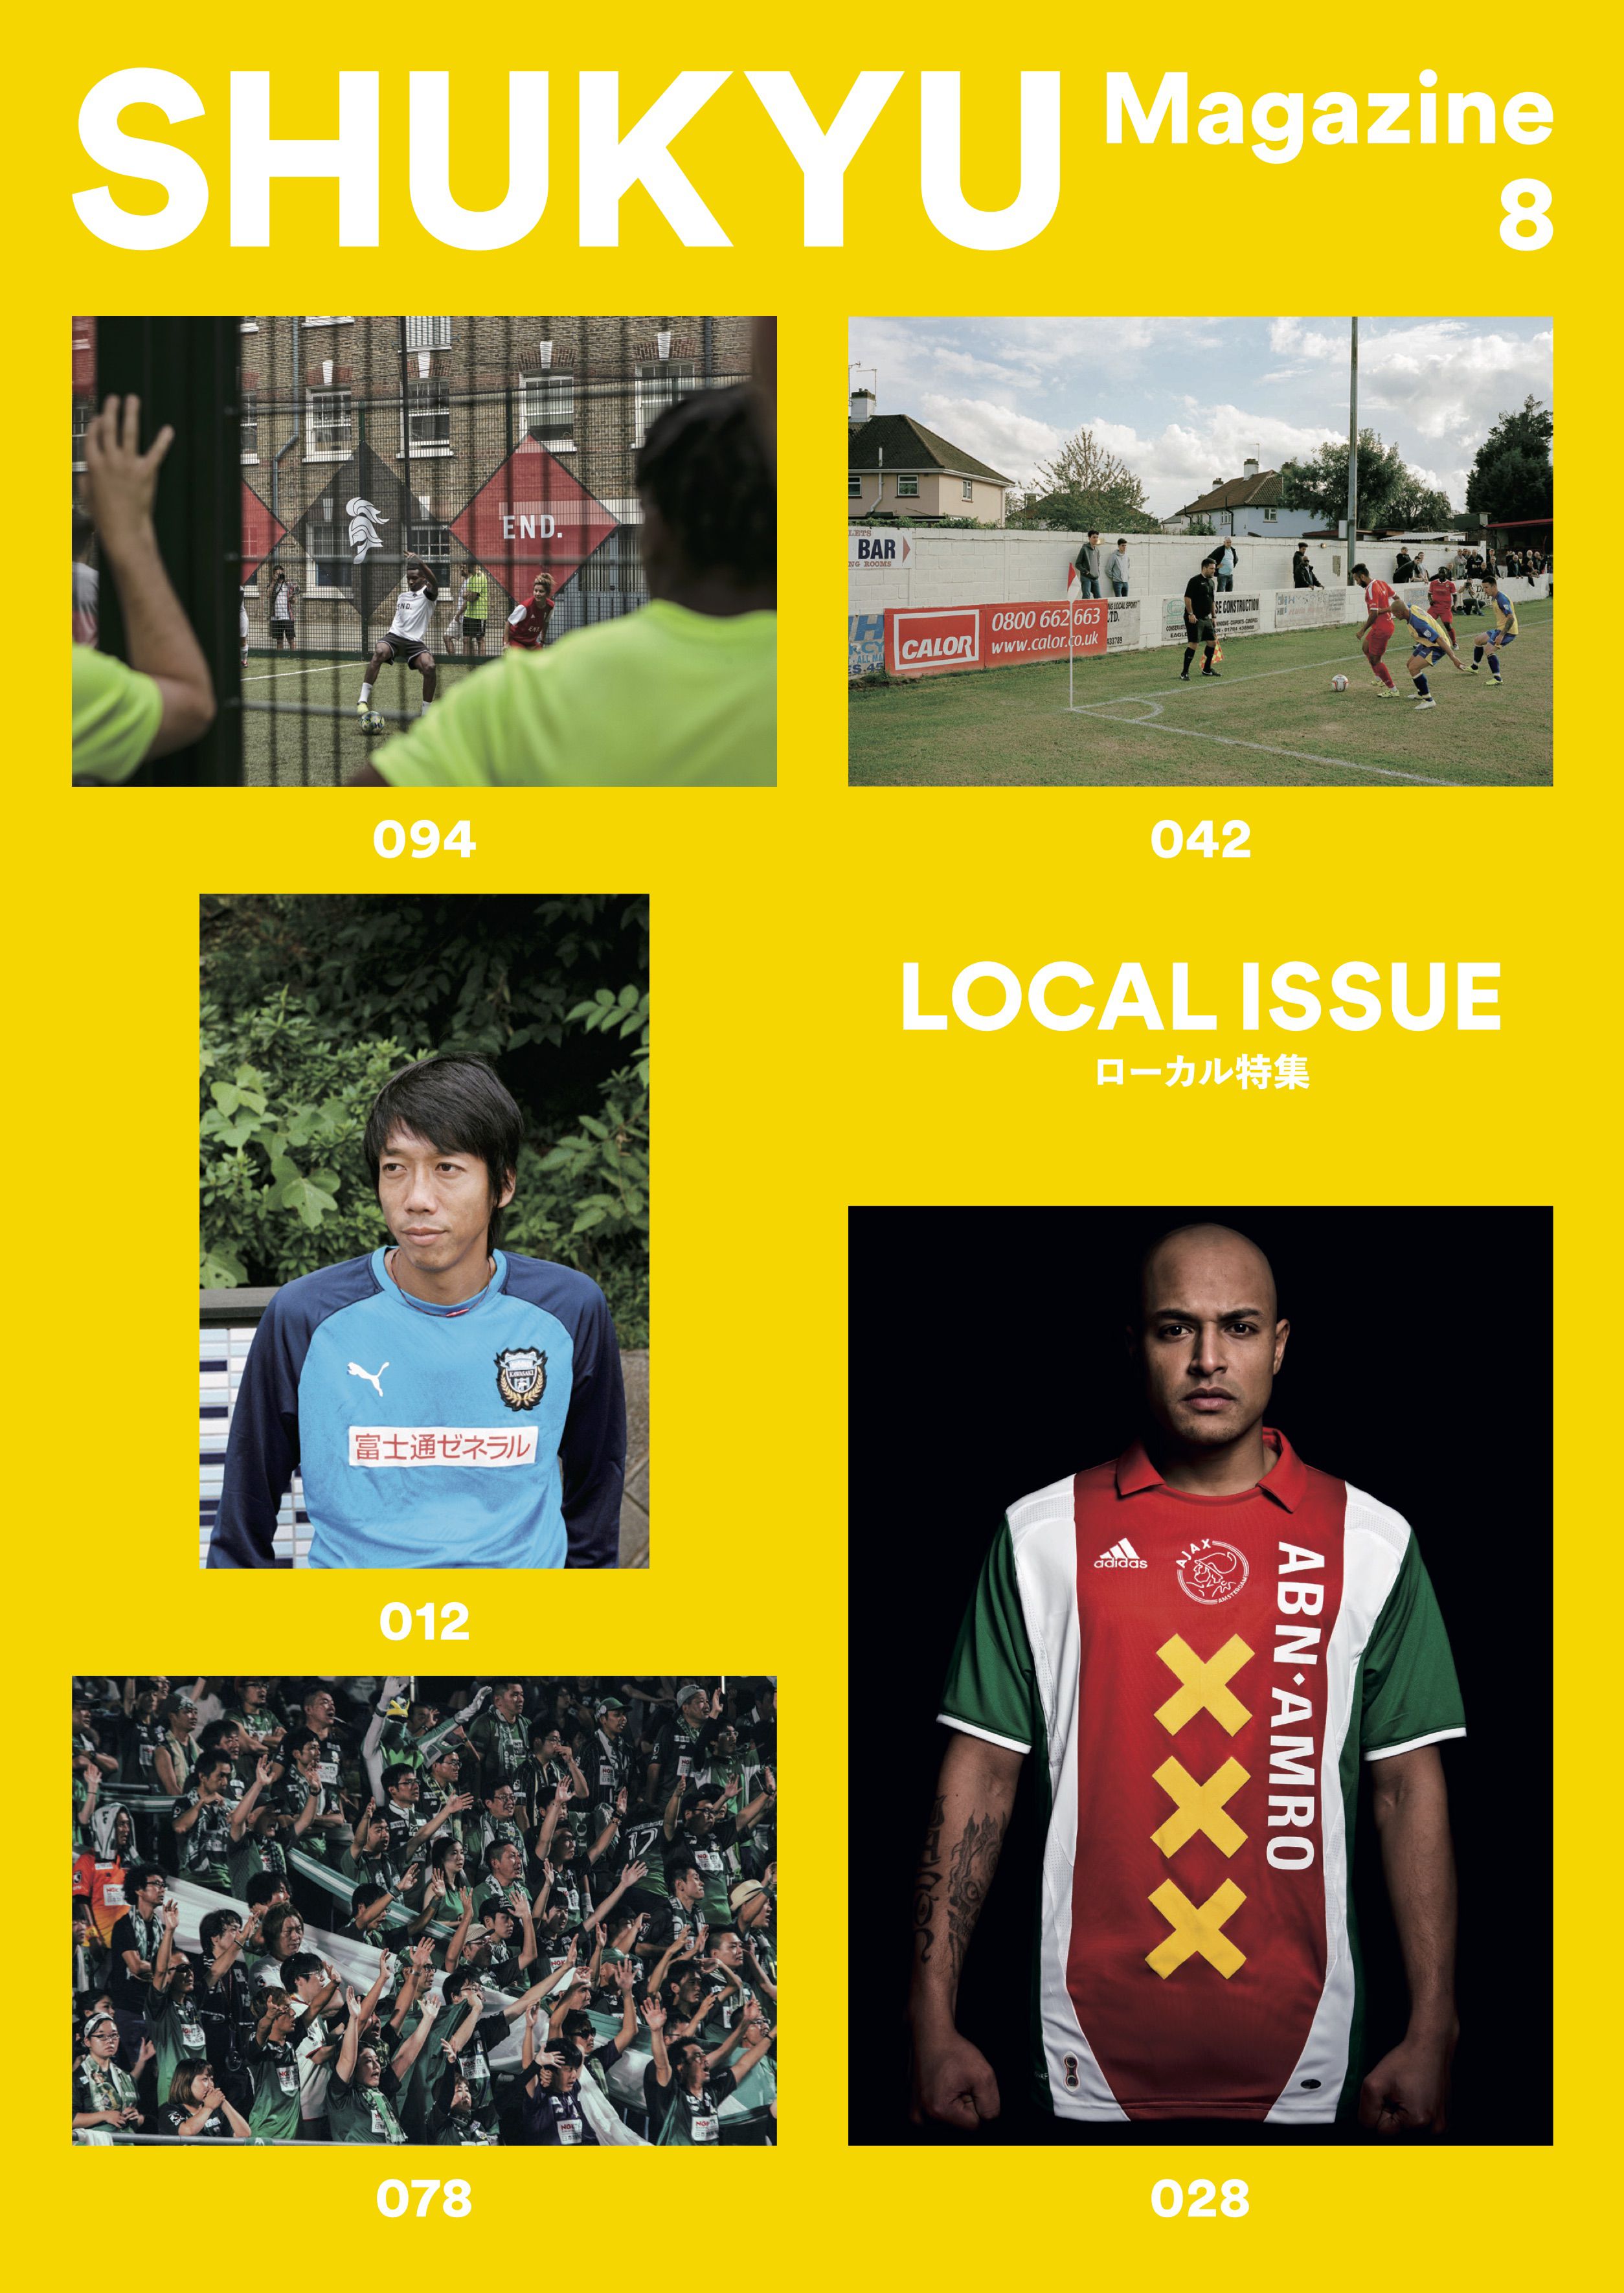 SHUKYU Magazine LOCAL ISSUE